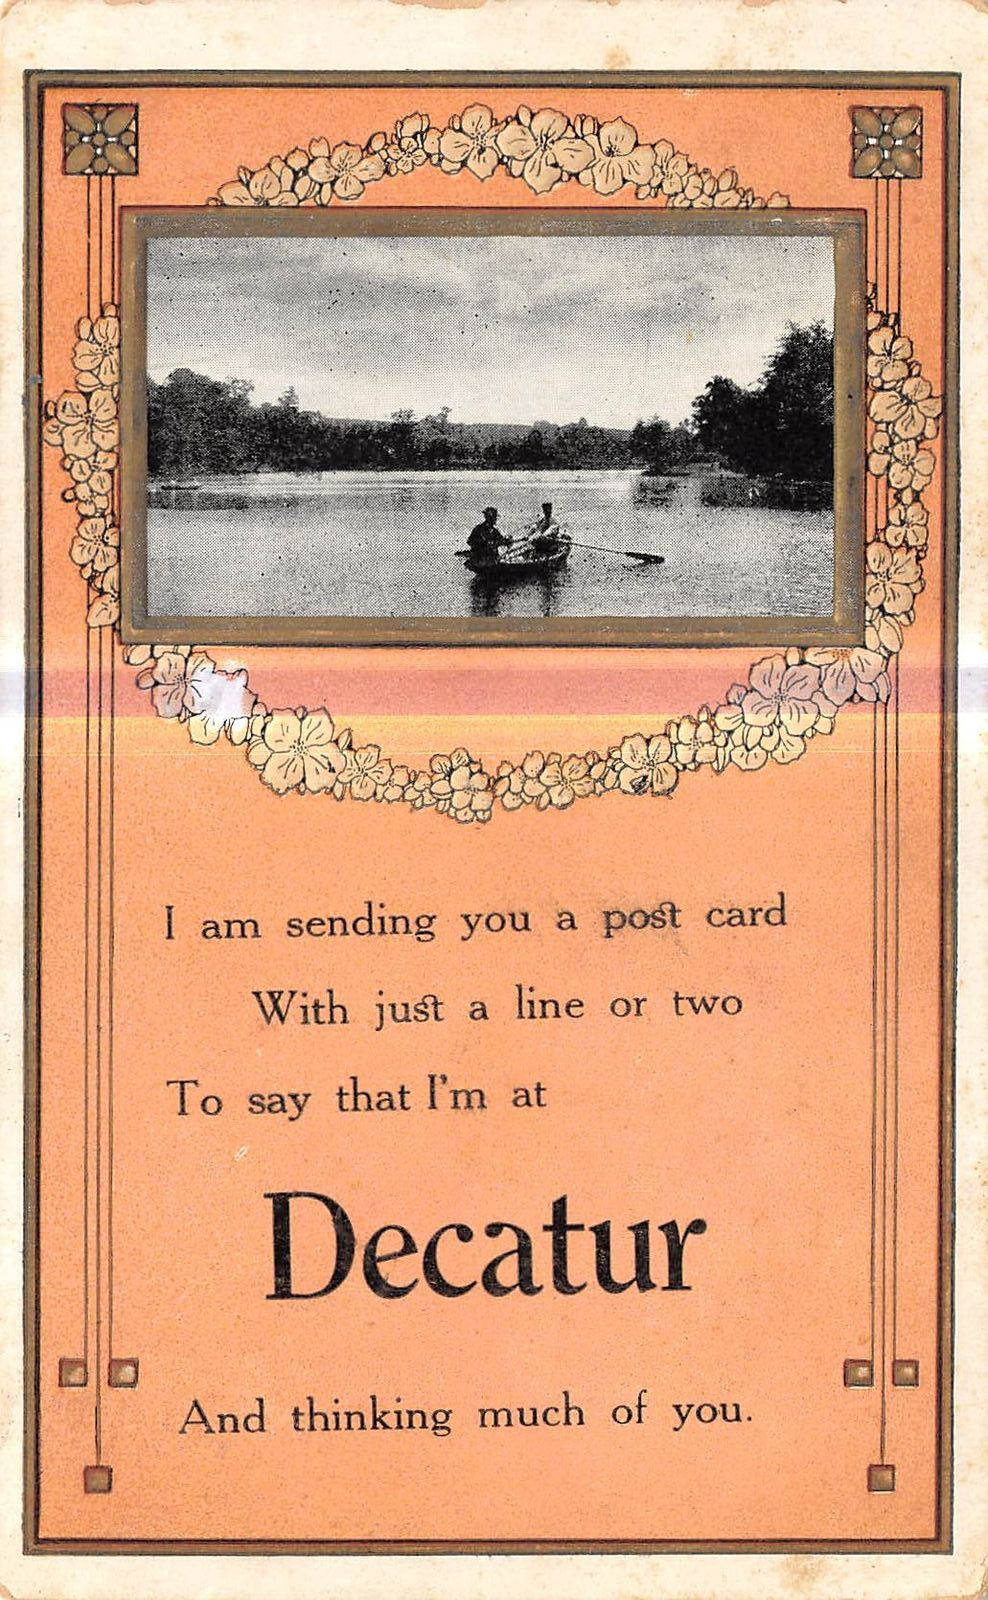 DECATUR Michigan postcard Van Buren County boating poem couple